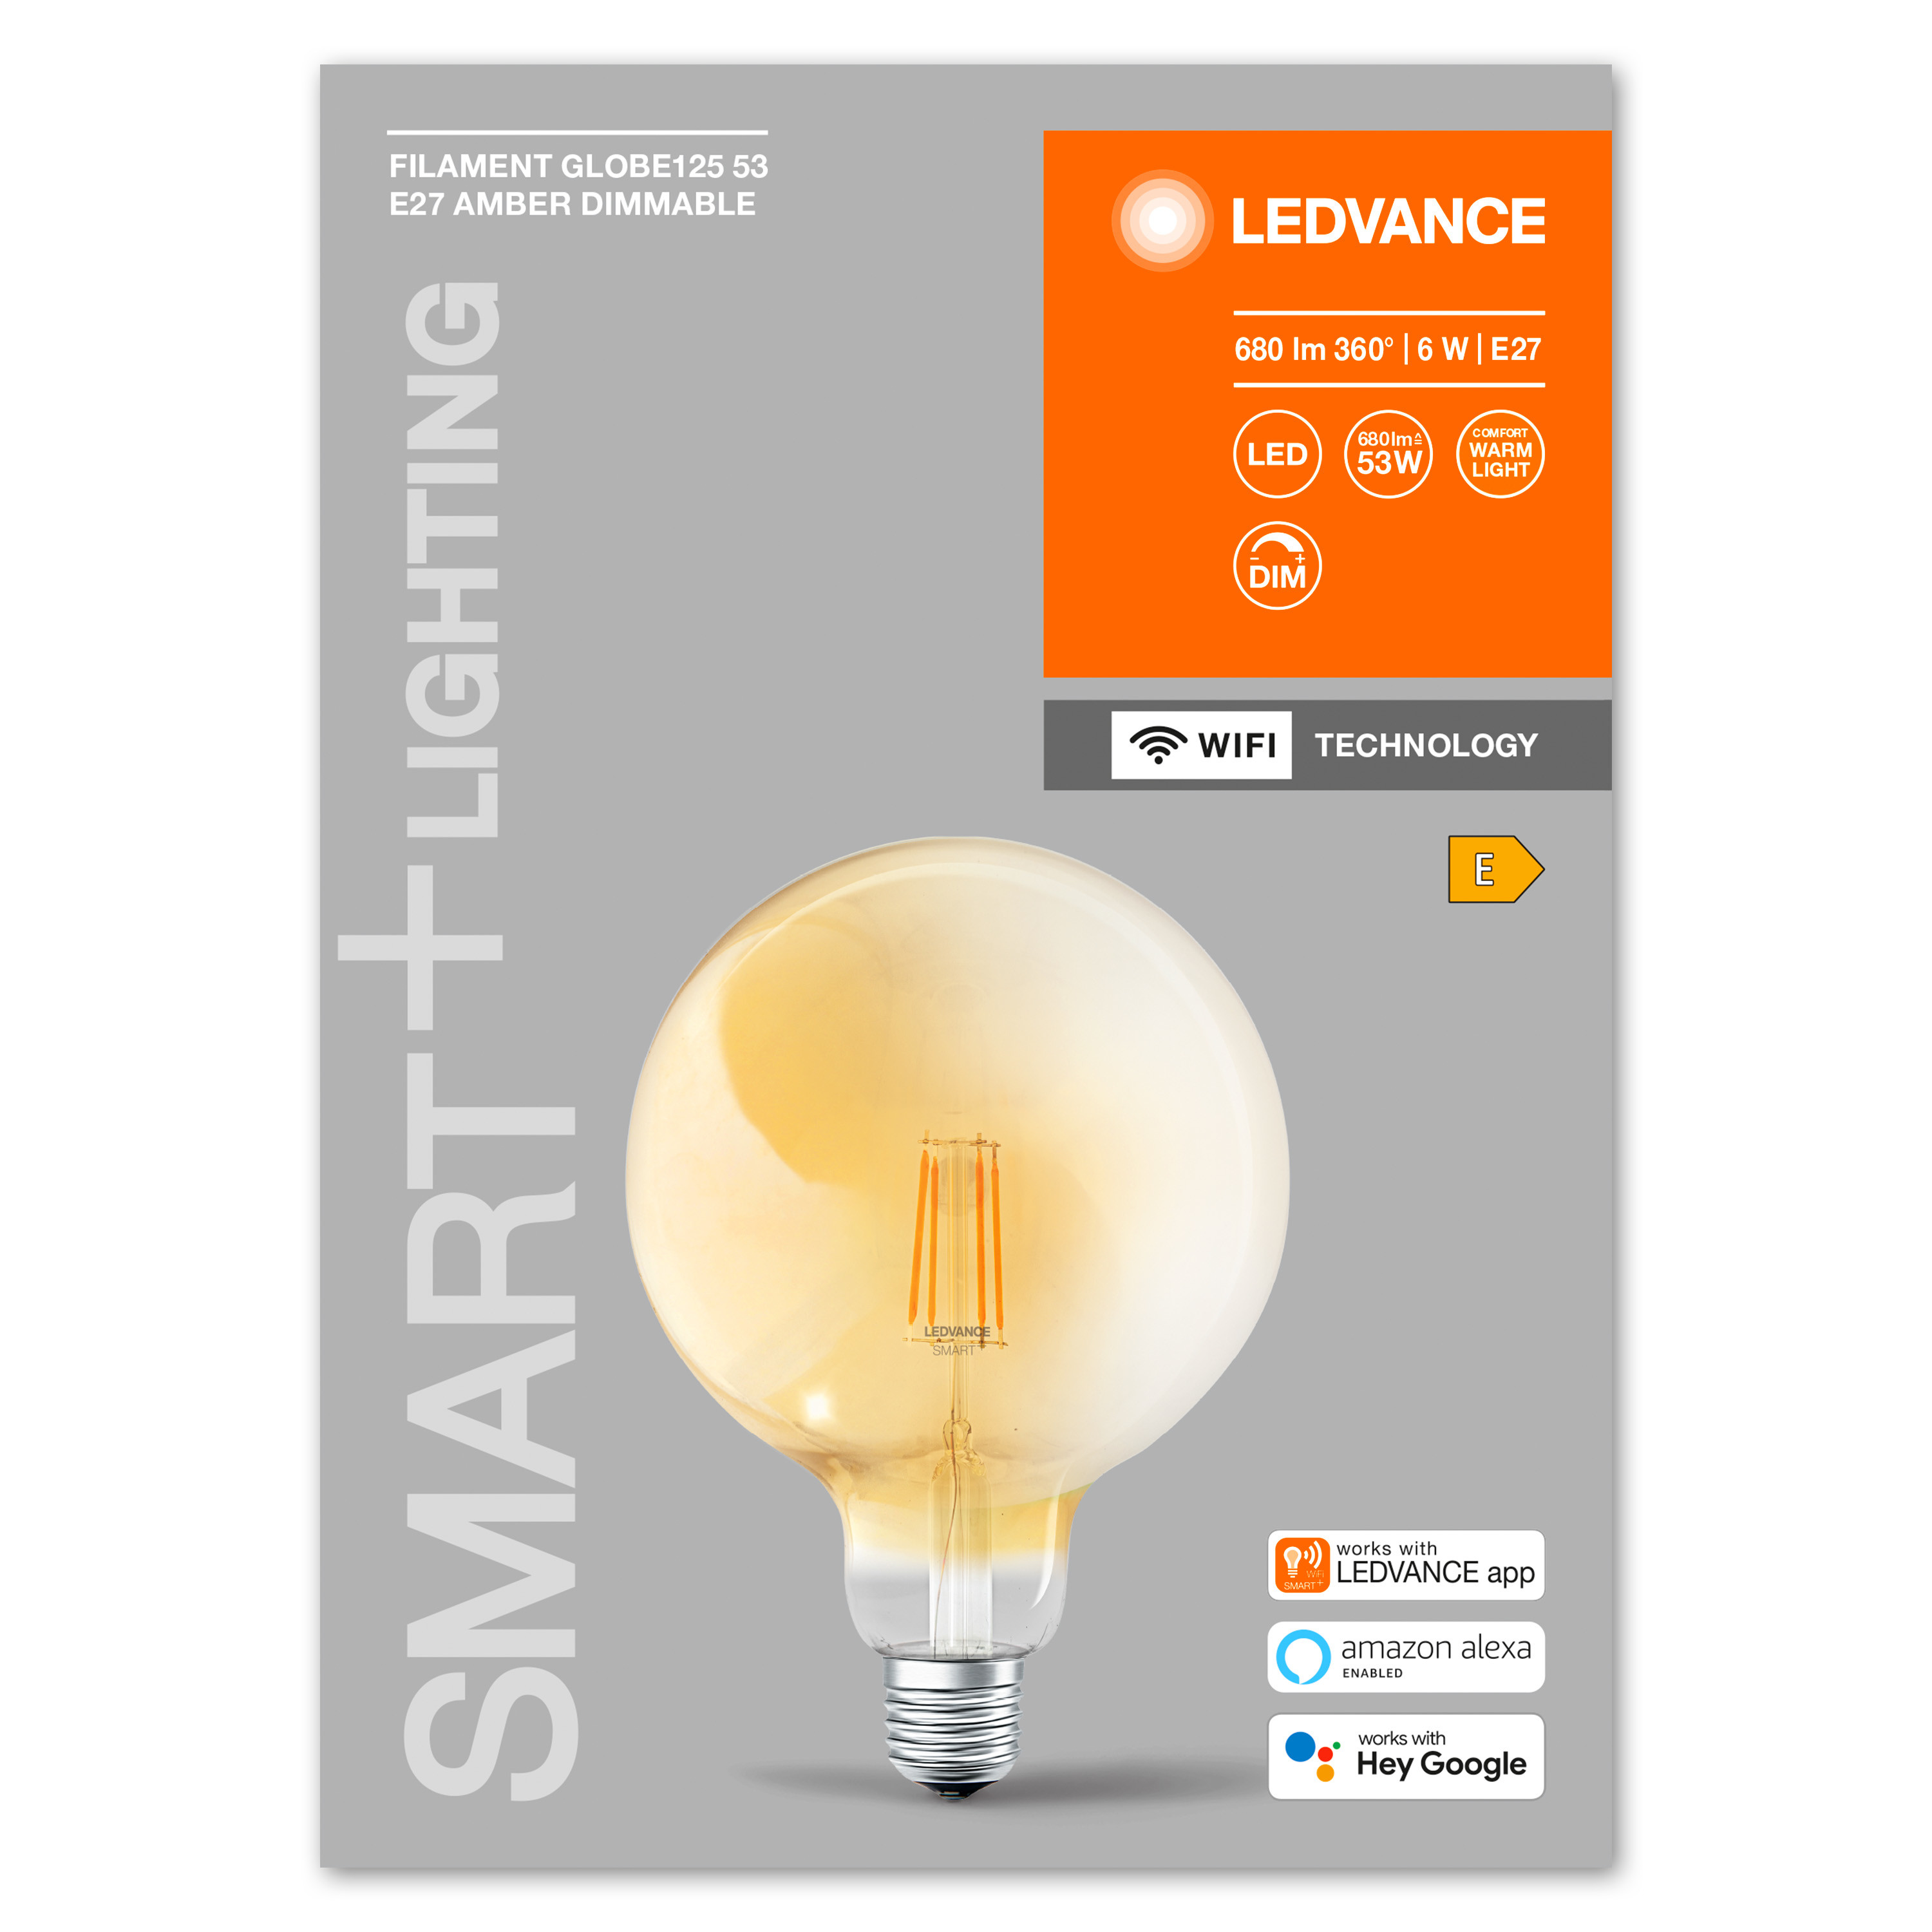 LEDVANCE Lumen Warmweiß Lampe 680 LED Filament Globe Dimmable SMART+